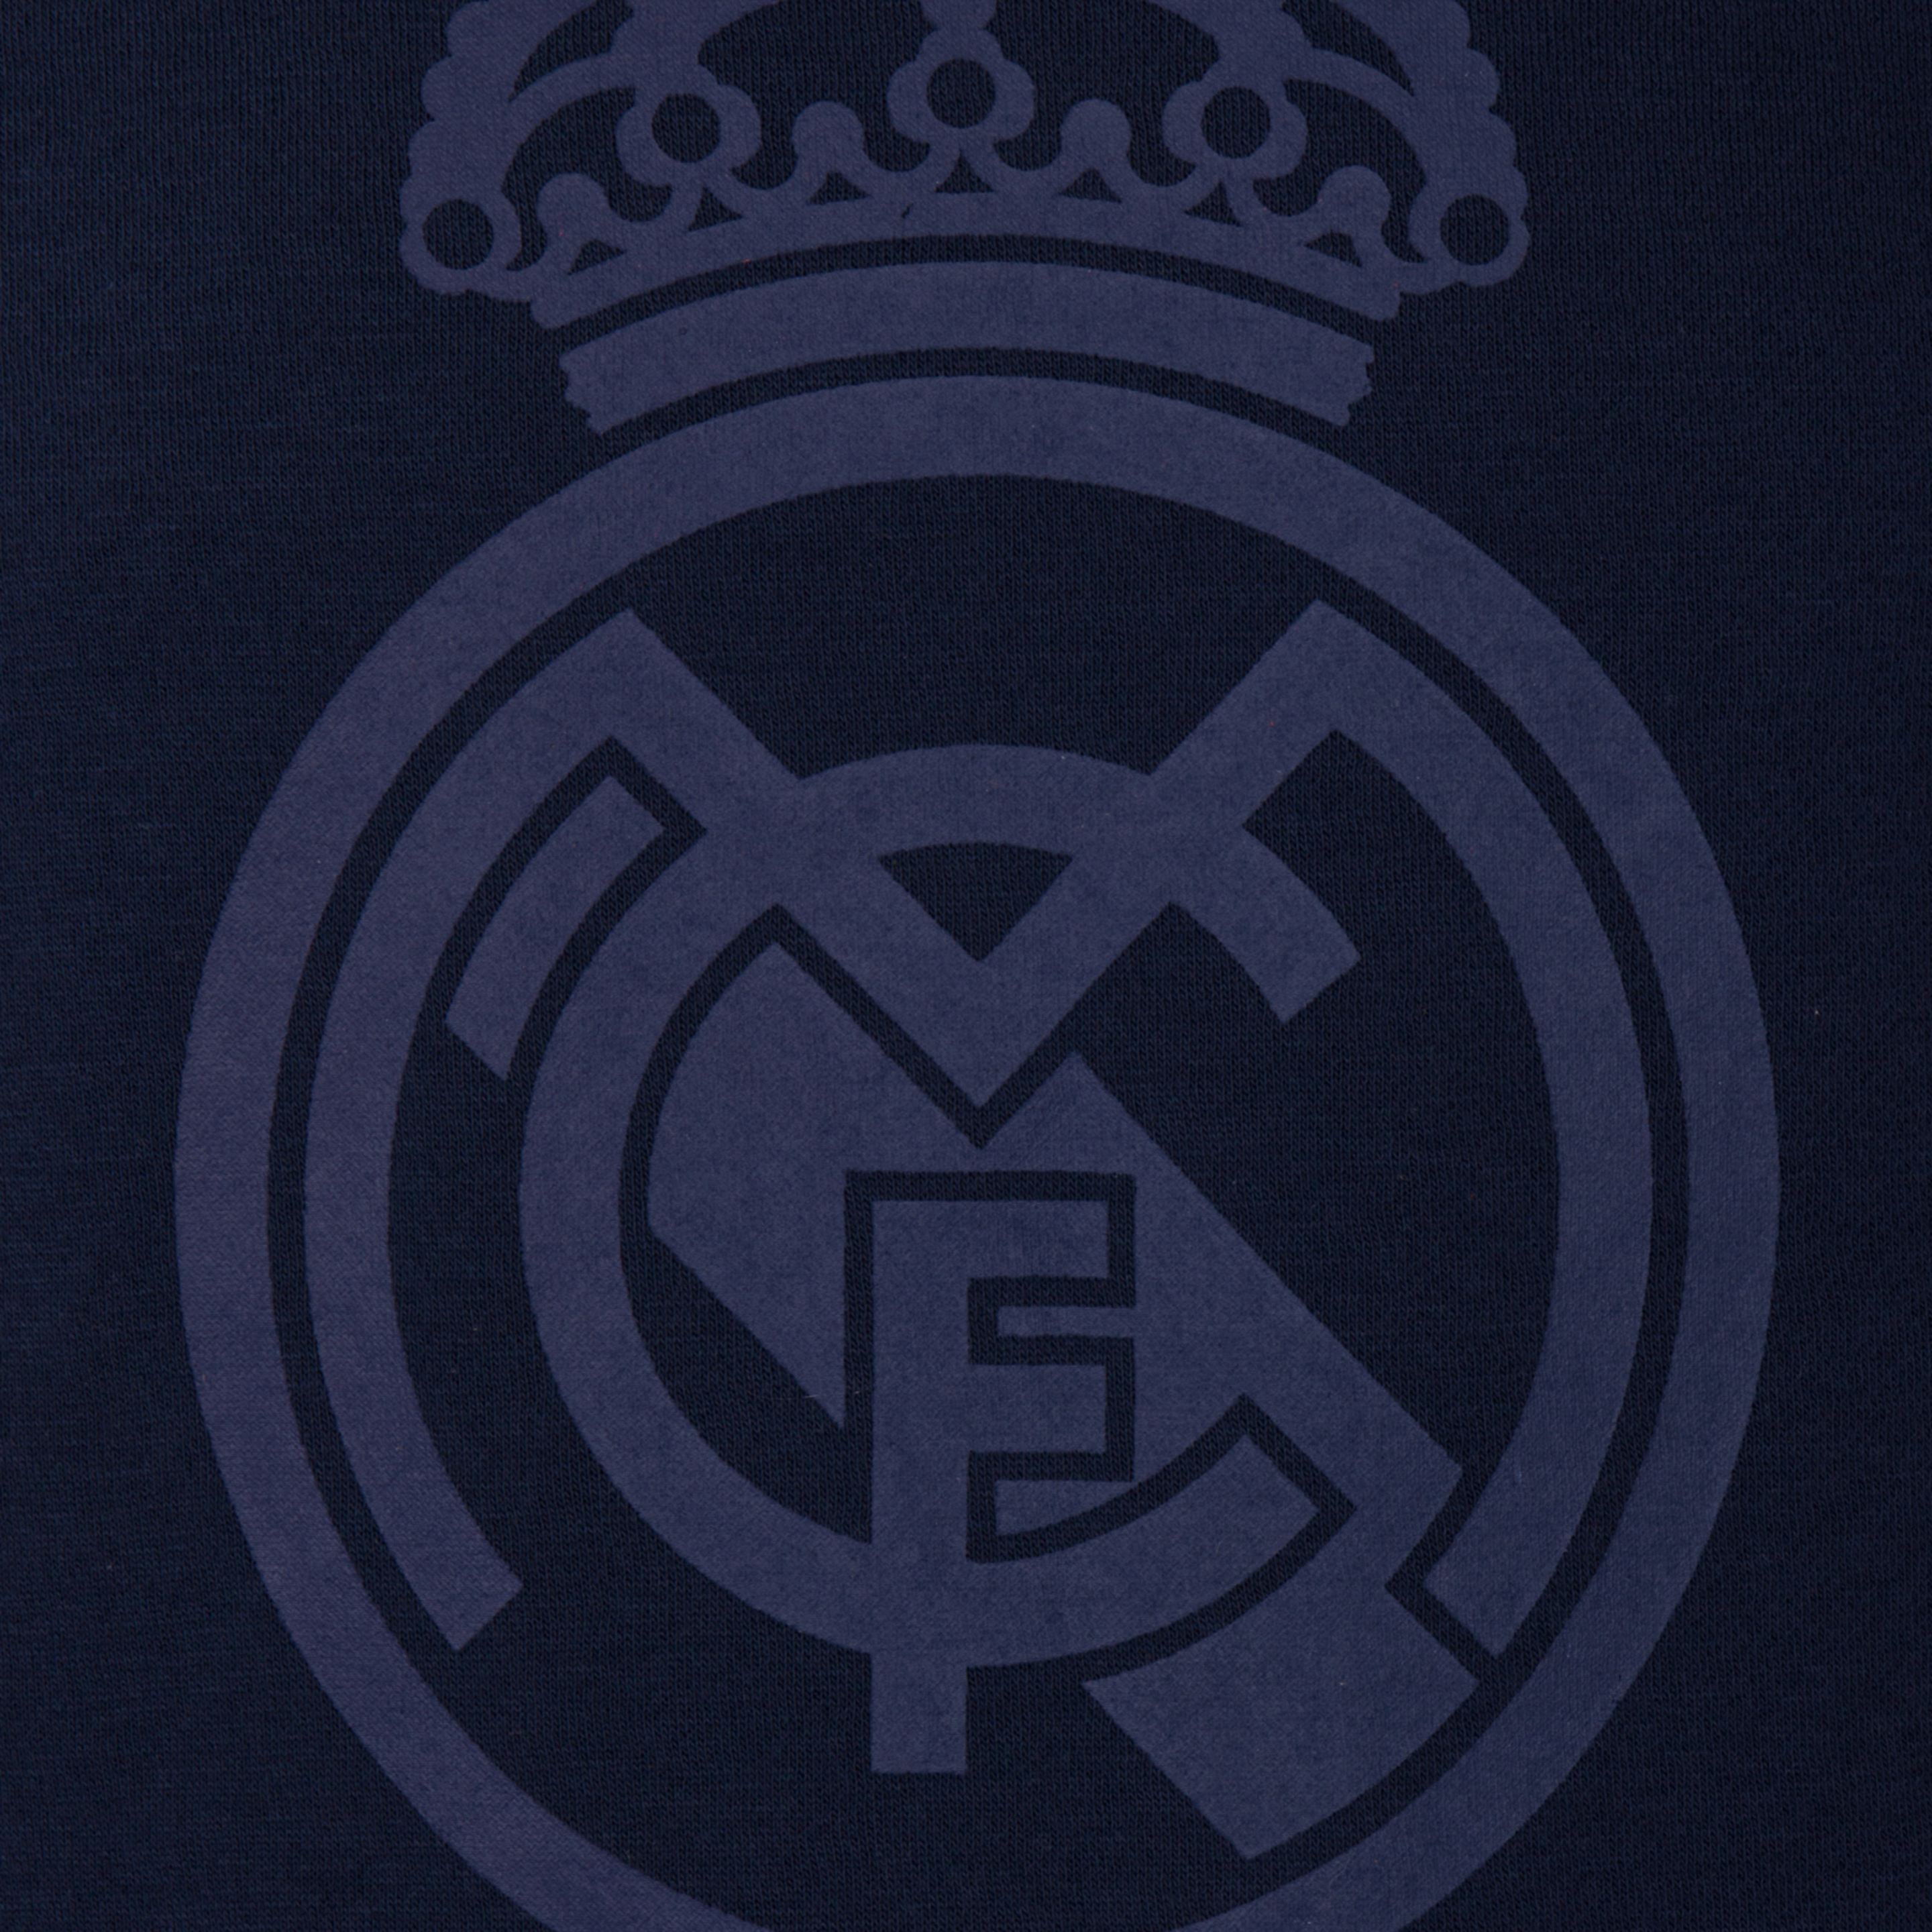 Real Madrid - Sudadera Oficial - Con El Escudo Del Club